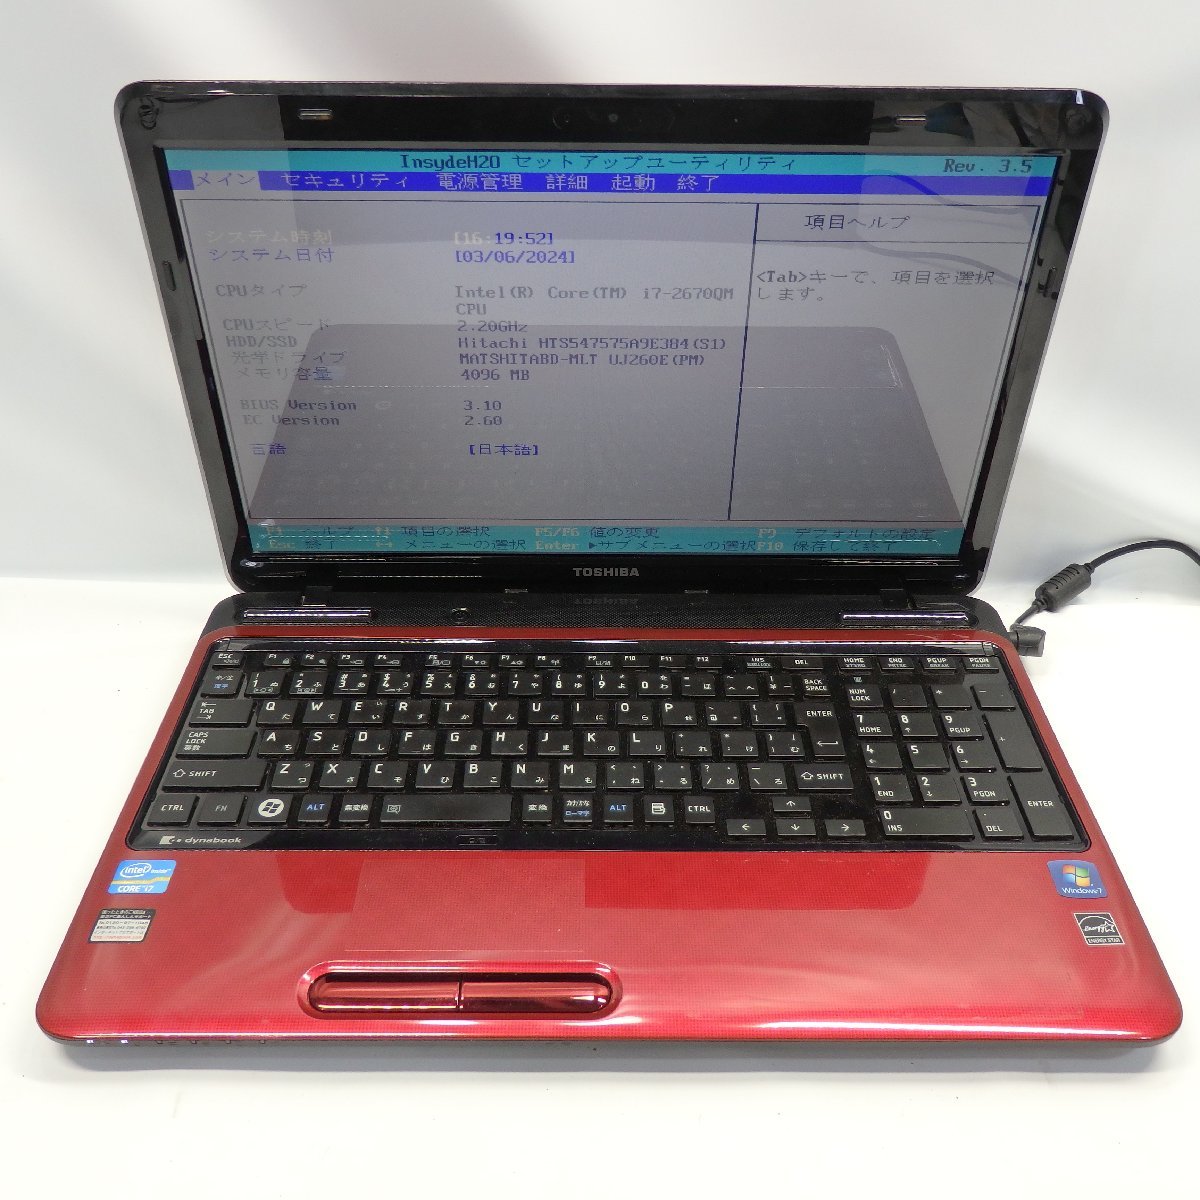 【ジャンク】TOSHIBA DynaBook T451/58ER Core i7-2670QM 2.2GHz/4GB/HDD750GB/Blu-ray/15インチ/OS無/AC無【栃木出荷】_DynaBook T451/58ER